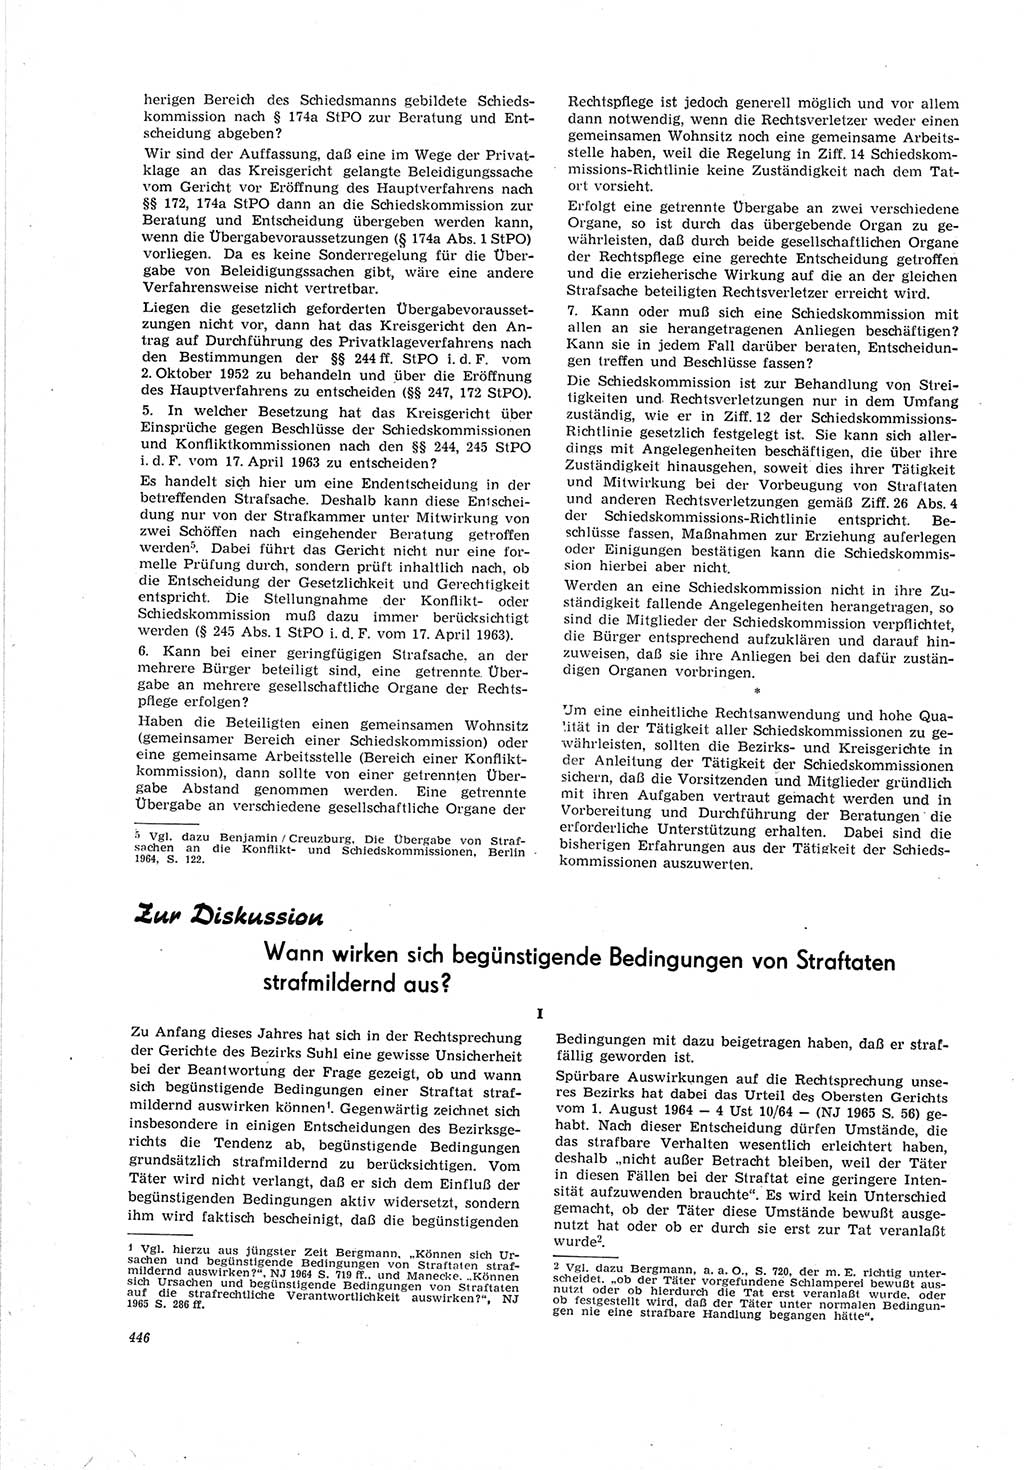 Neue Justiz (NJ), Zeitschrift für Recht und Rechtswissenschaft [Deutsche Demokratische Republik (DDR)], 19. Jahrgang 1965, Seite 446 (NJ DDR 1965, S. 446)